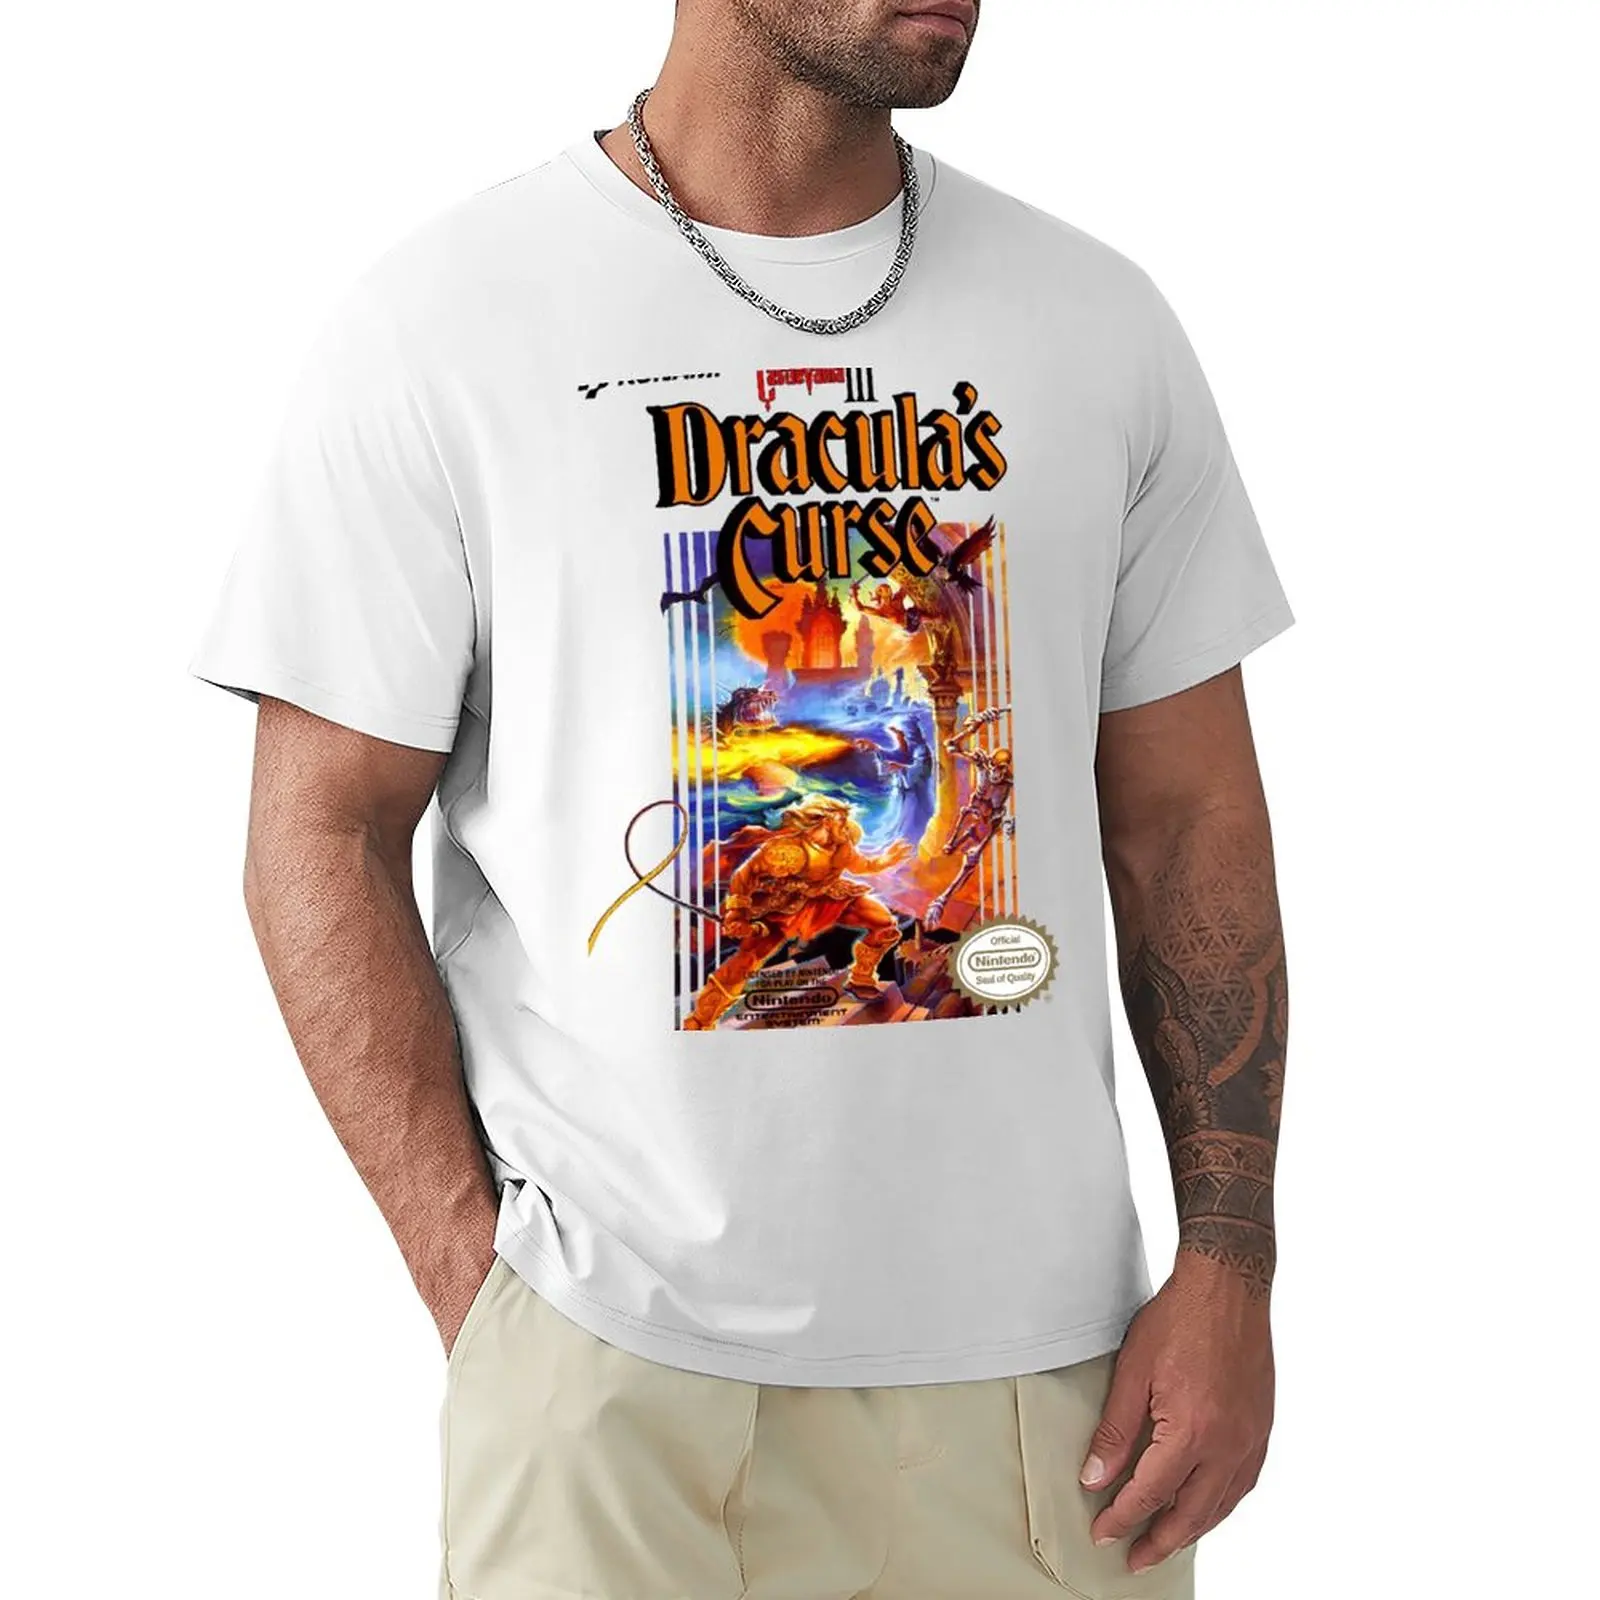 Футболка Castlevania 3, короткая эстетичная одежда, забавная футболка, мужские футболки большого и высокого размера. Изображение 0